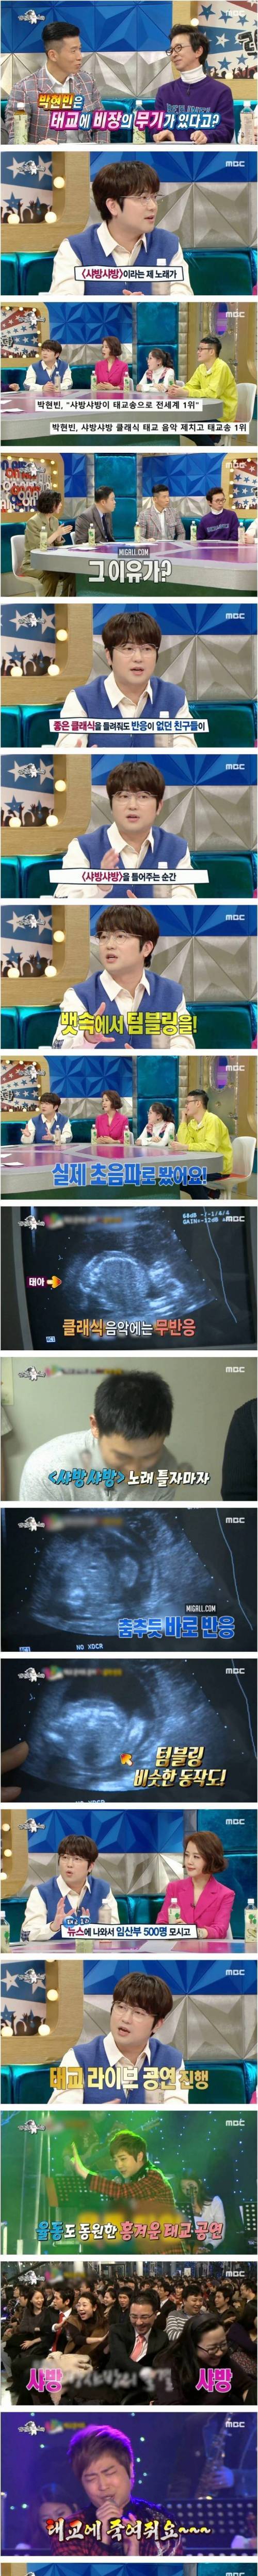 [스압] 샤방샤방과 함께 탄생한 박현빈의 첫째 아들.jpg